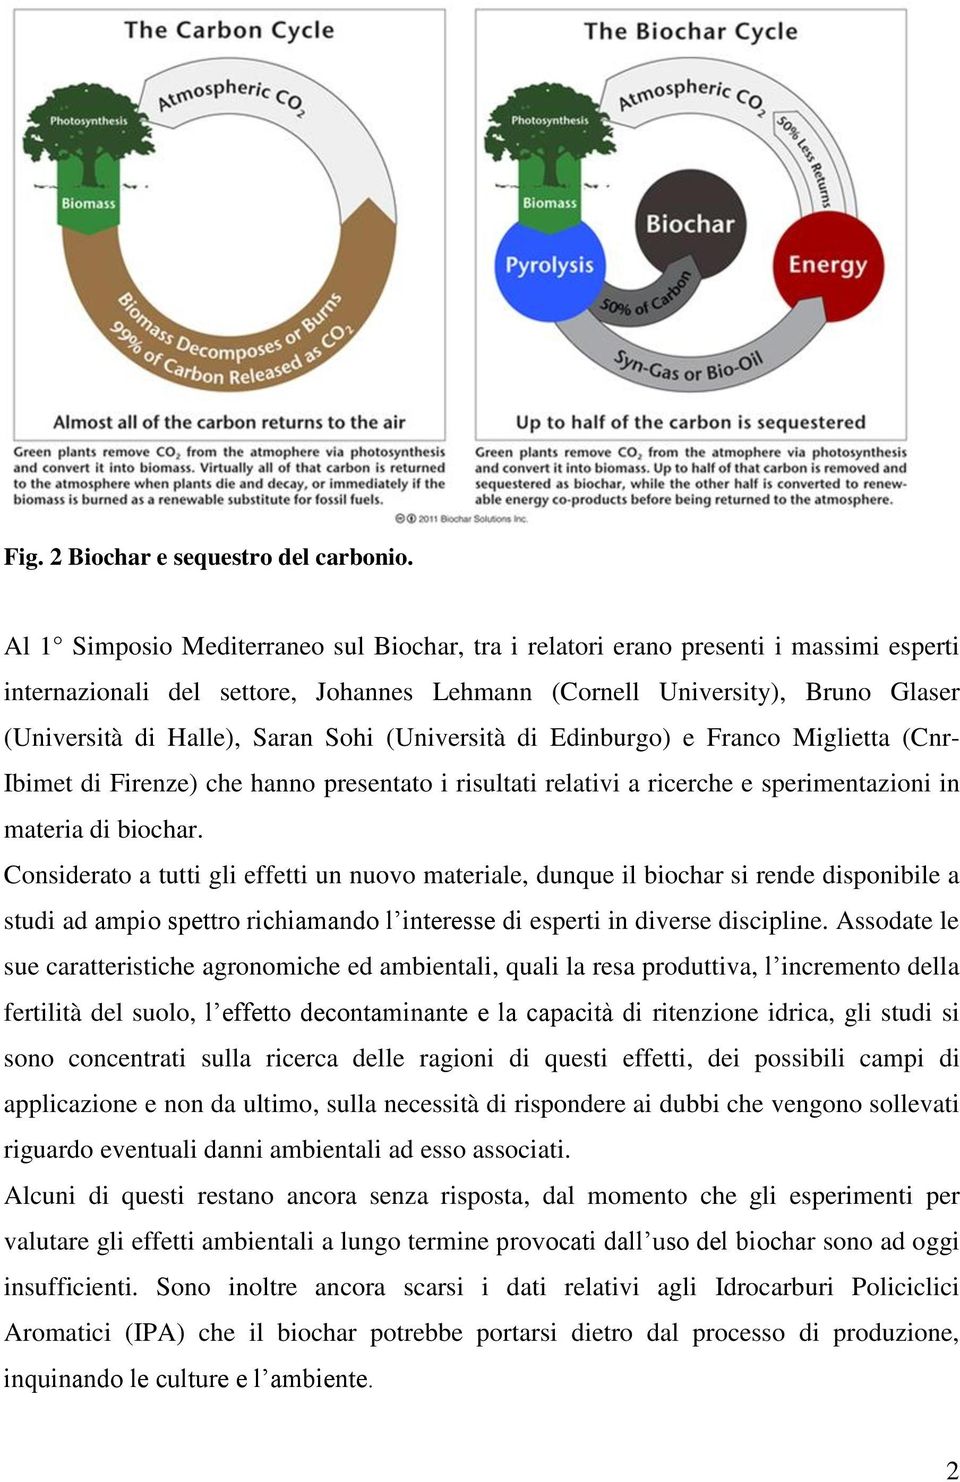 Sohi (Università di Edinburgo) e Franco Miglietta (Cnr- Ibimet di Firenze) che hanno presentato i risultati relativi a ricerche e sperimentazioni in materia di biochar.